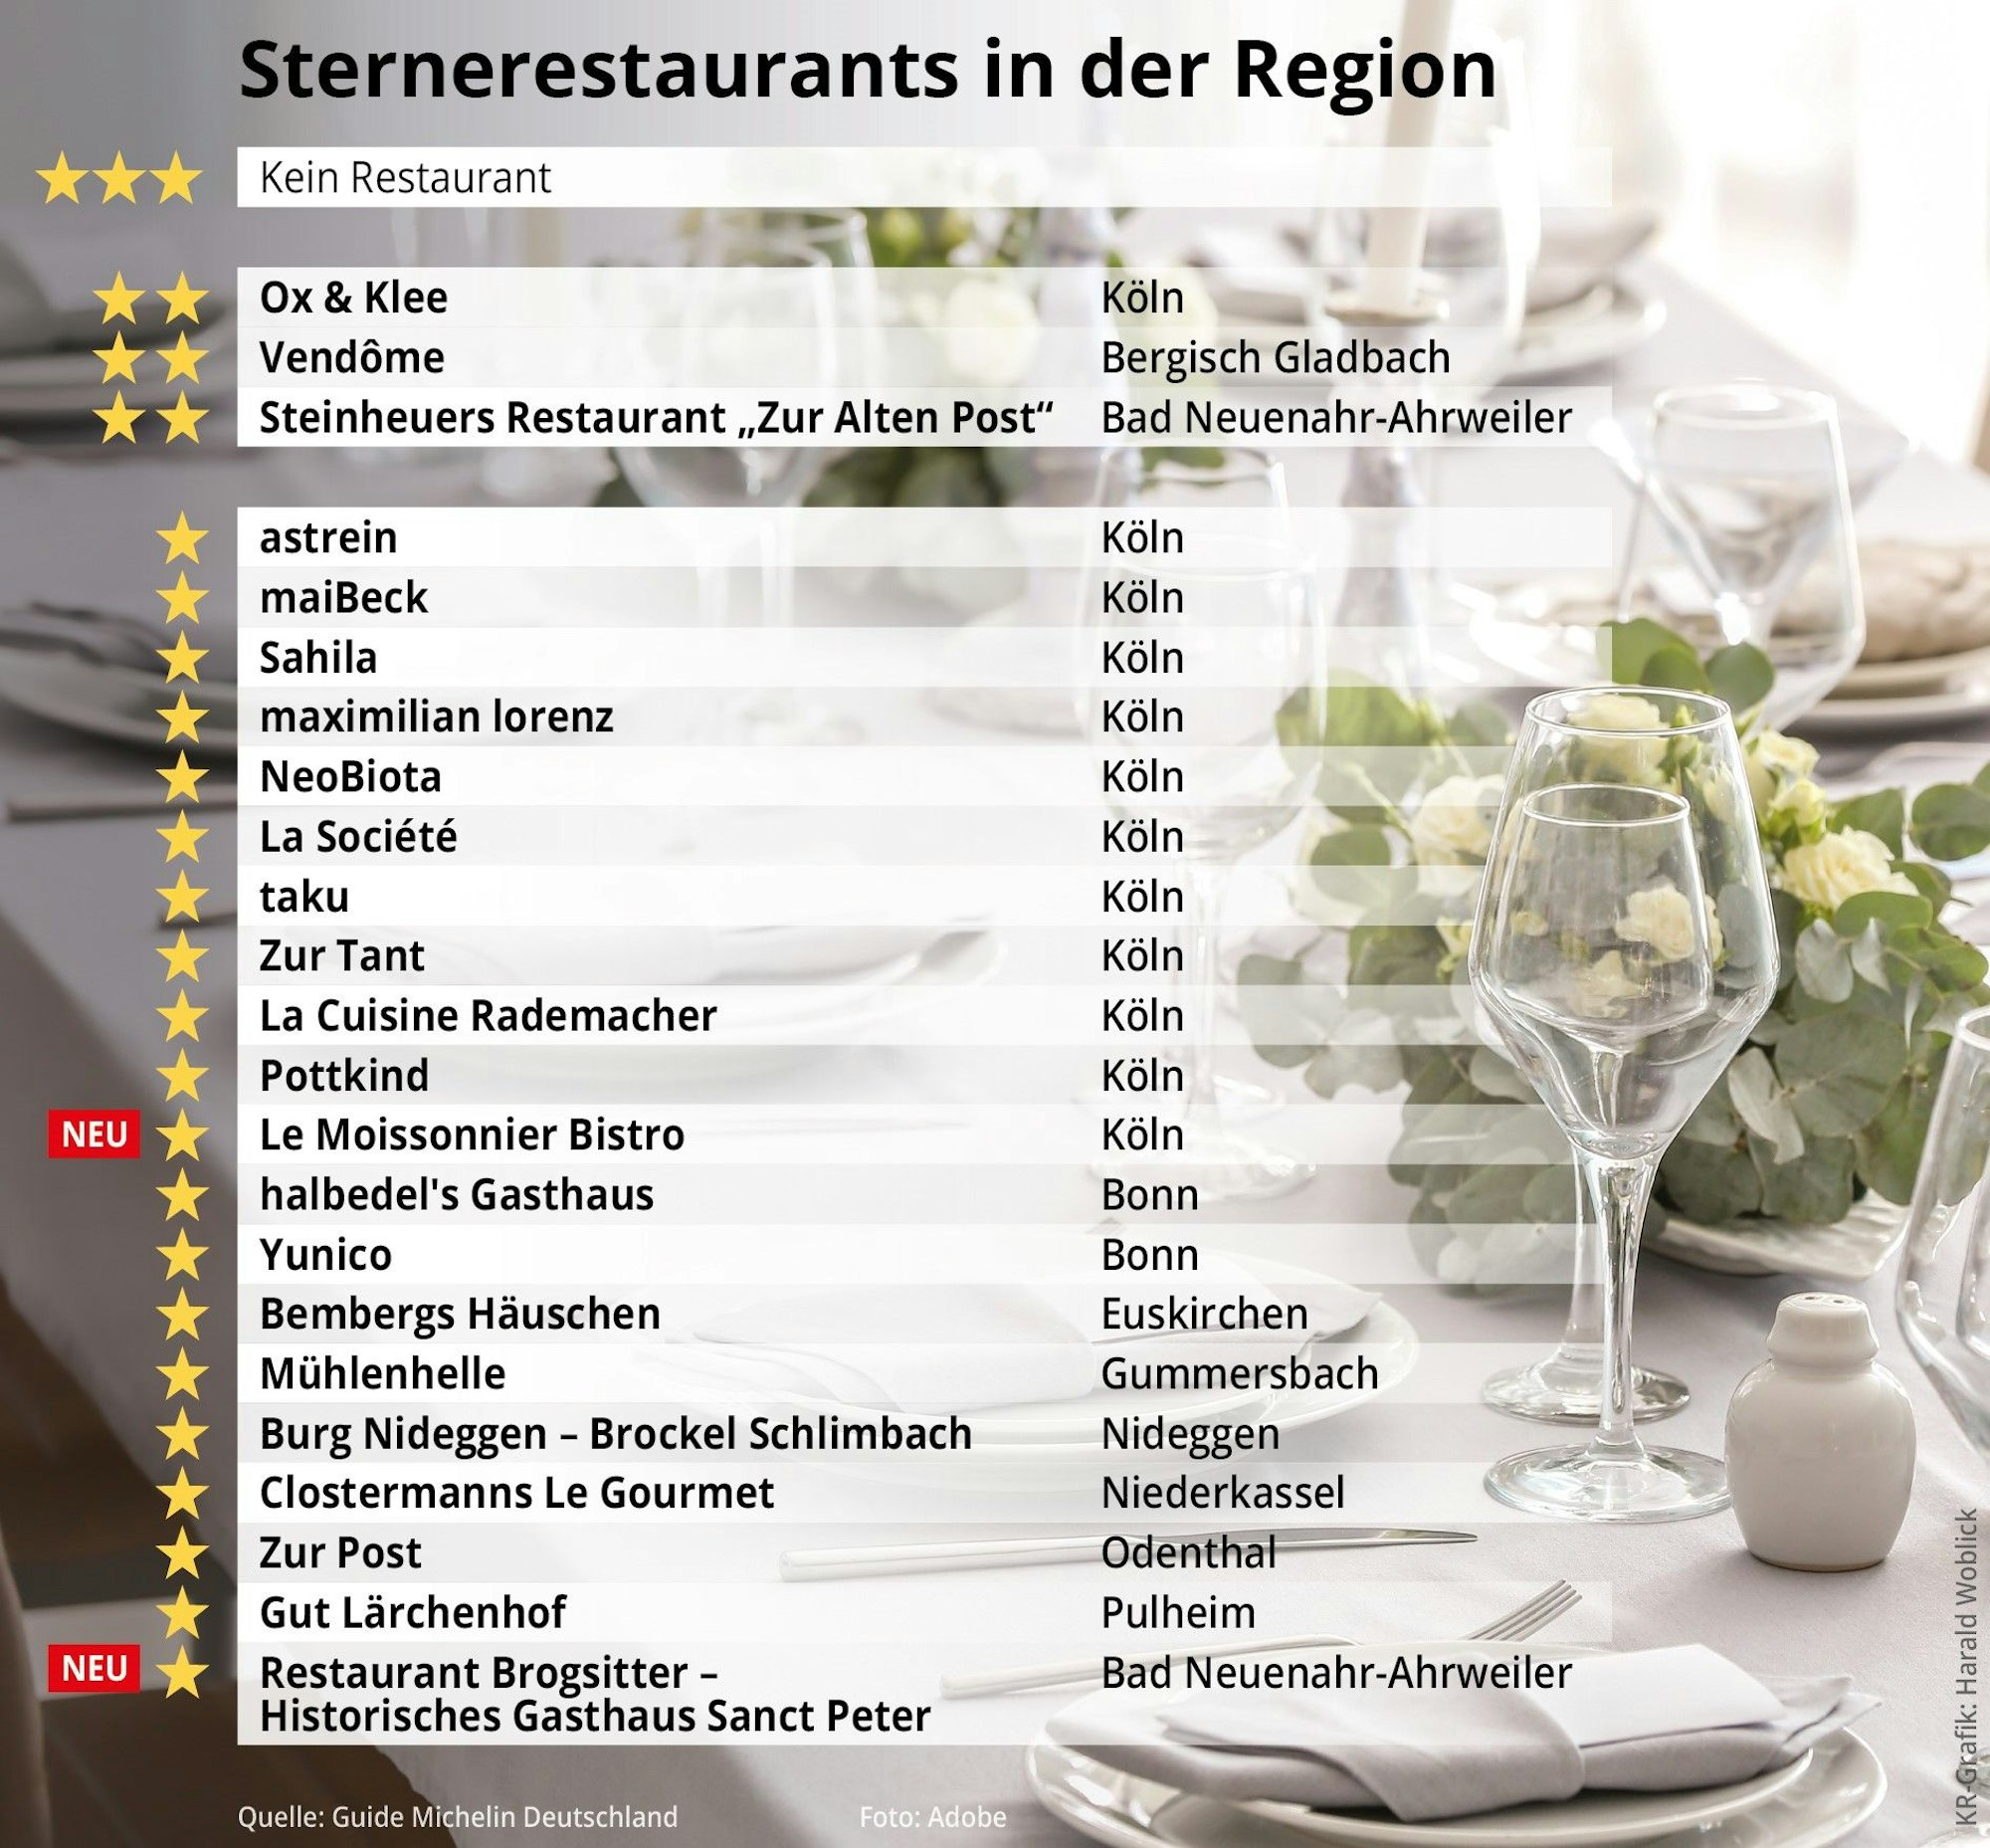 Sternerestaurants in der Region